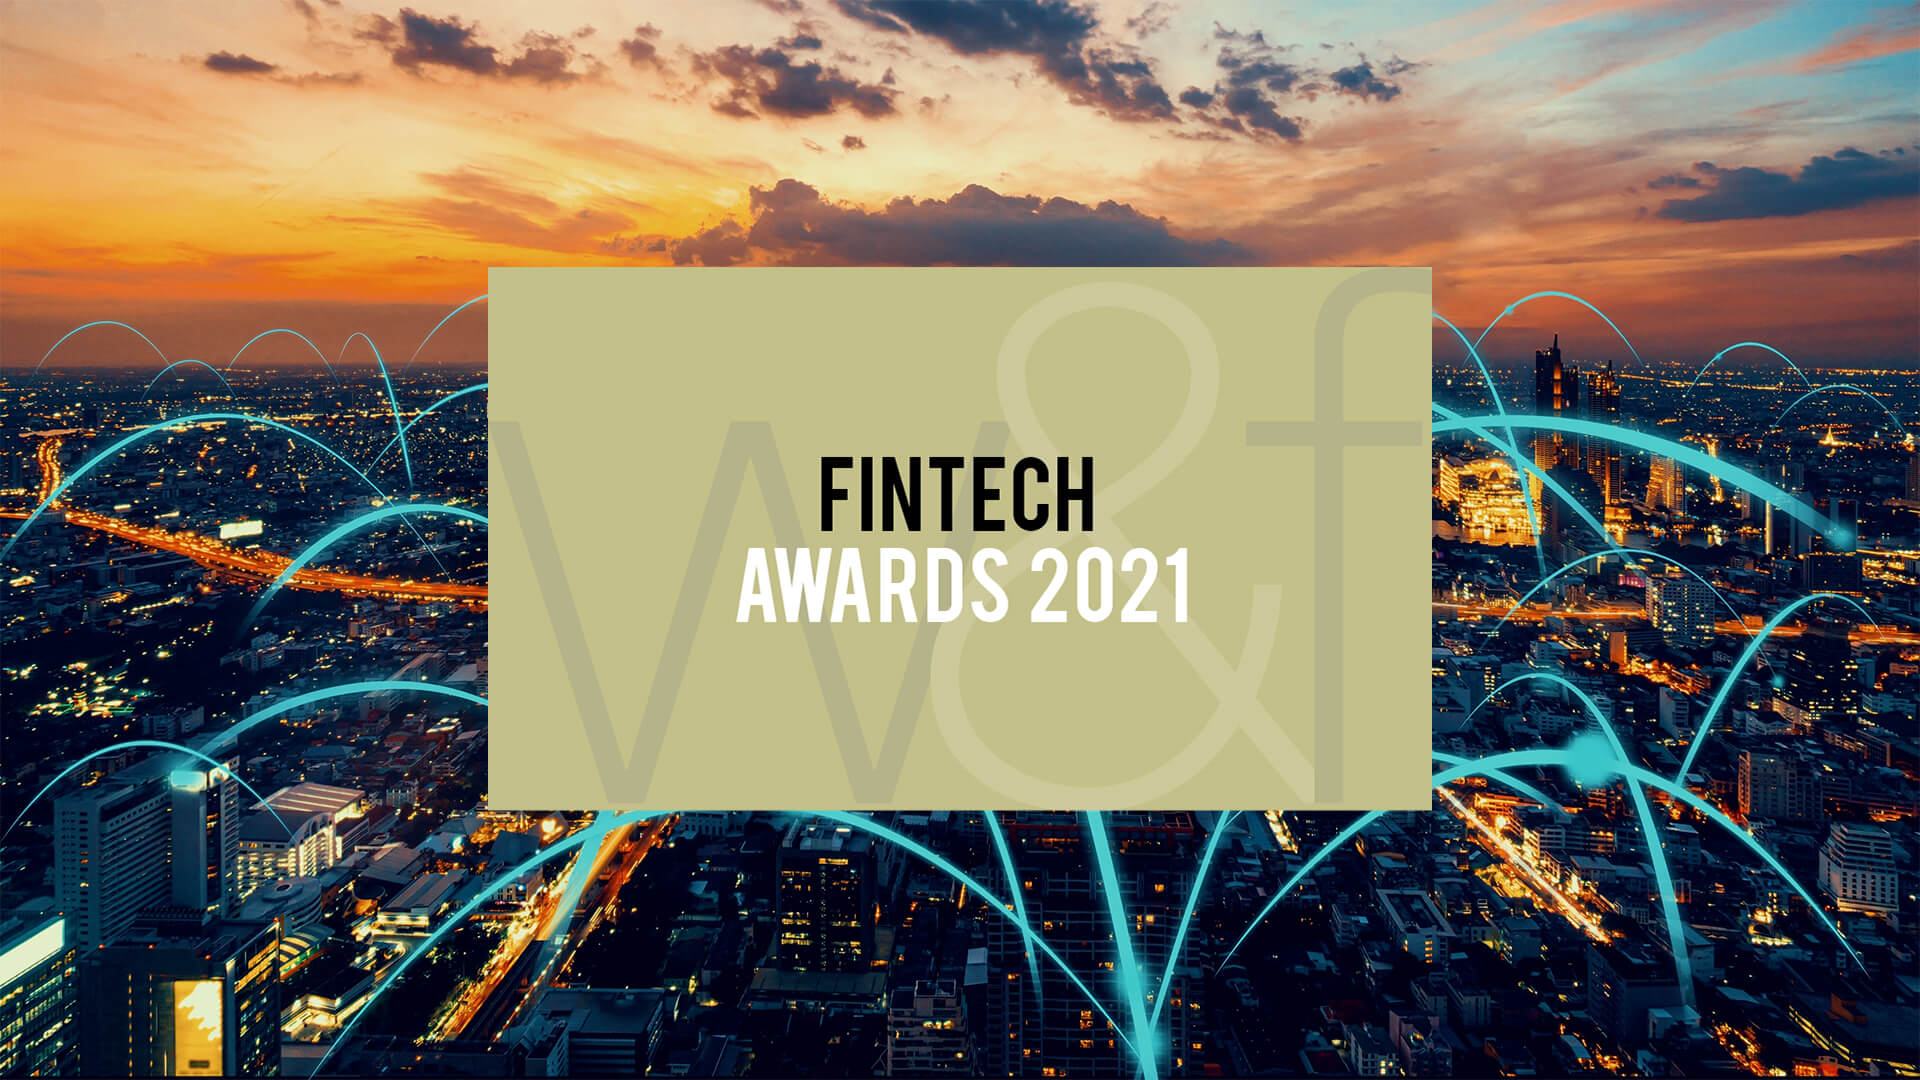 Fintech Awards 2021